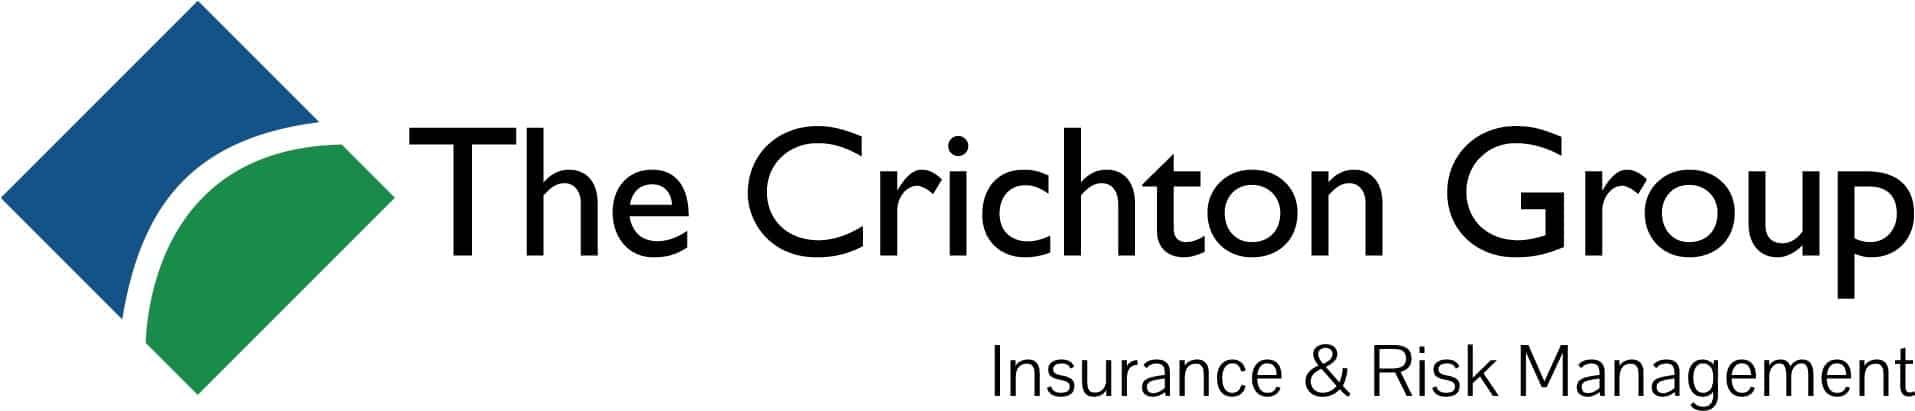 Crichton Logo